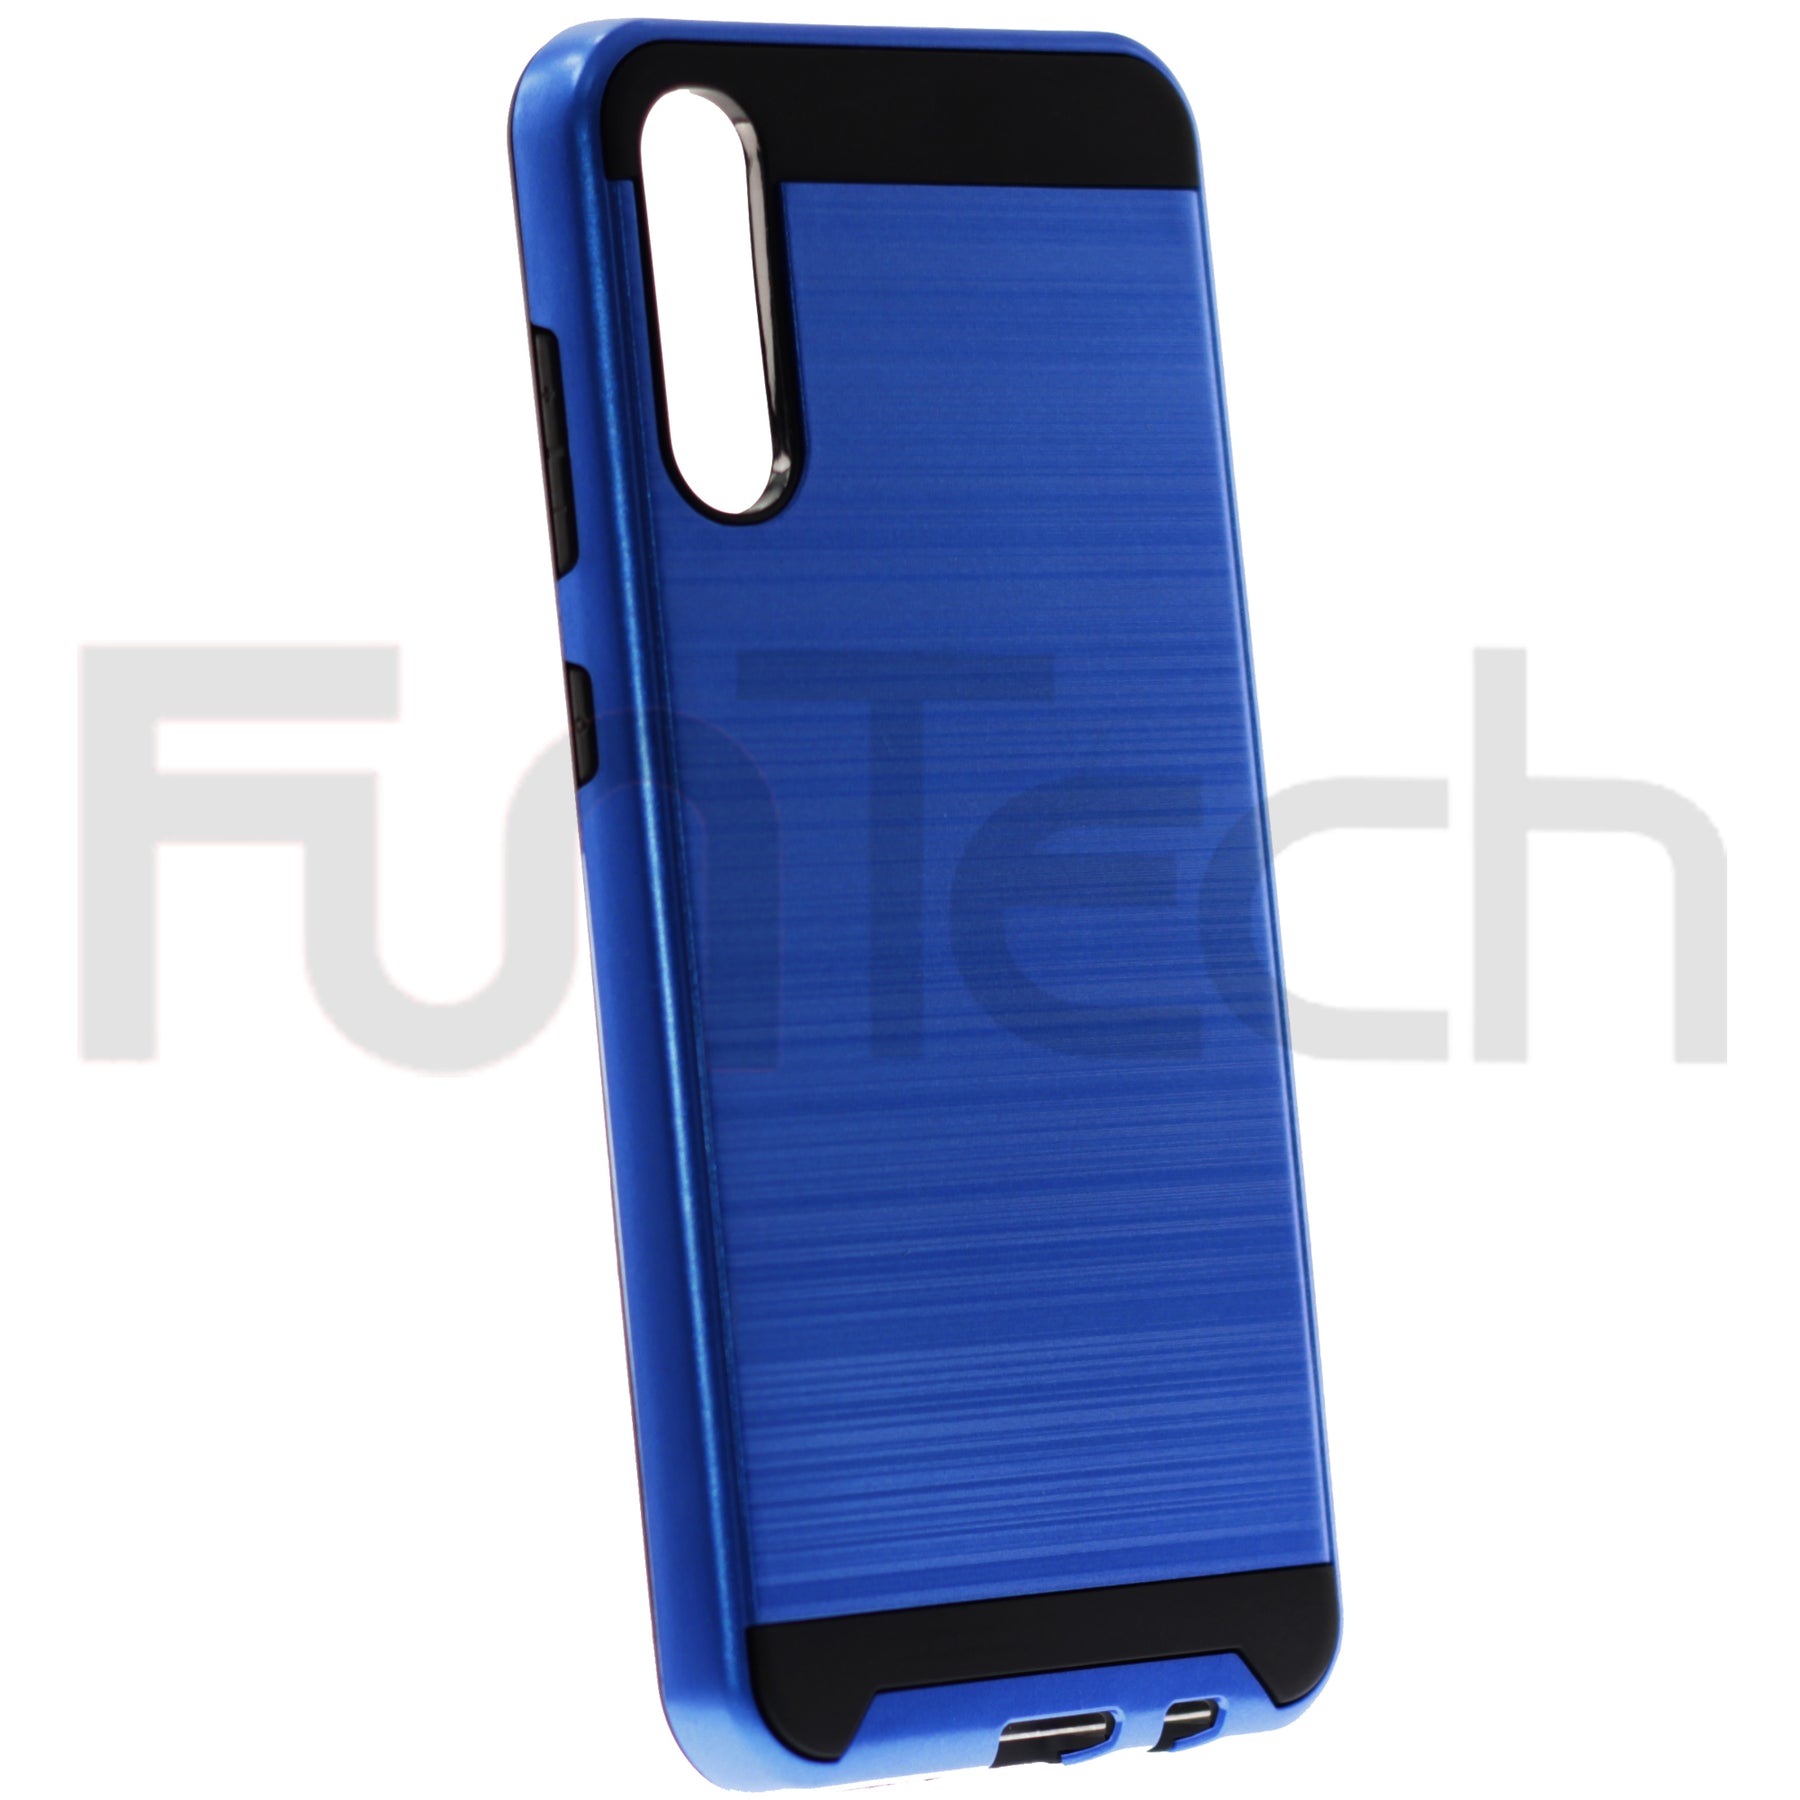 Samsung A70, Slim Armor Case, Color Blue.